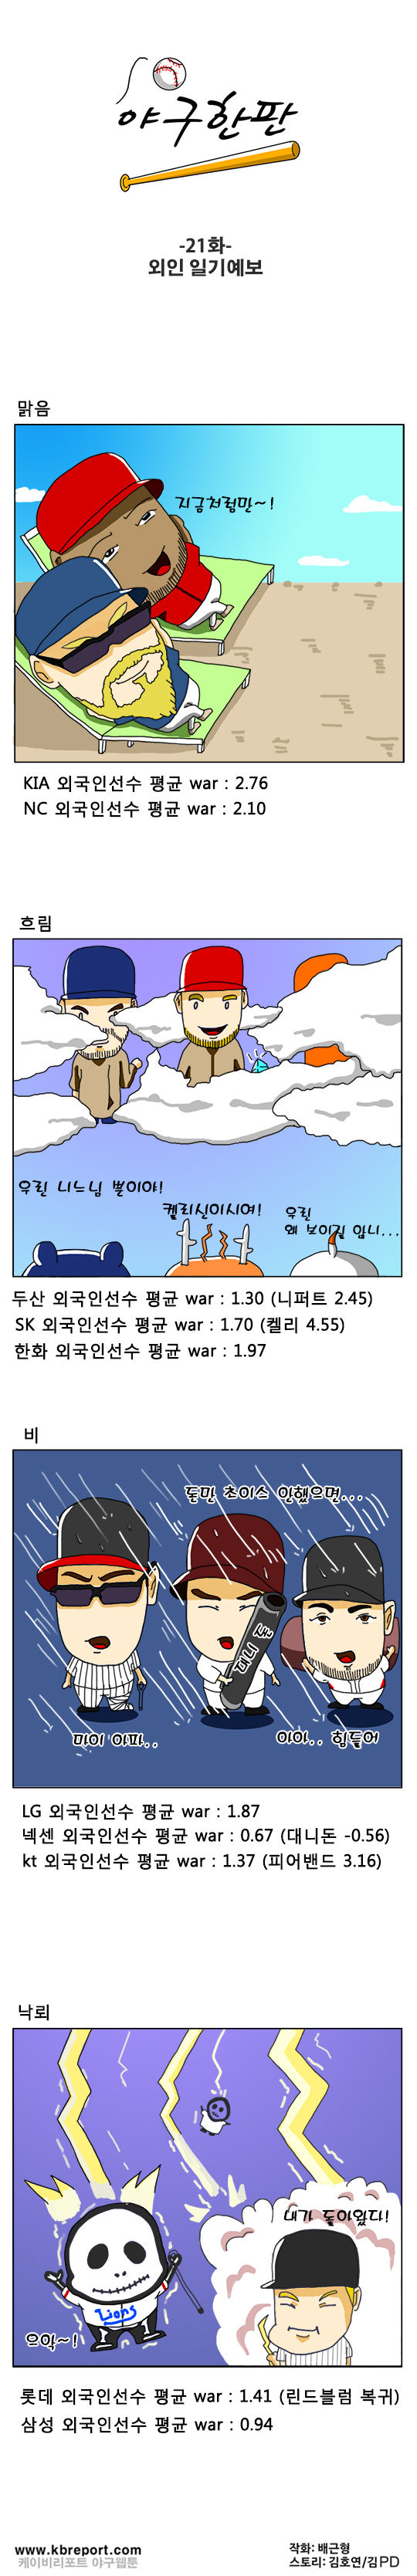 출처: [KBO카툰] KIA·NC, 용병 활약에 날씨 '화창'